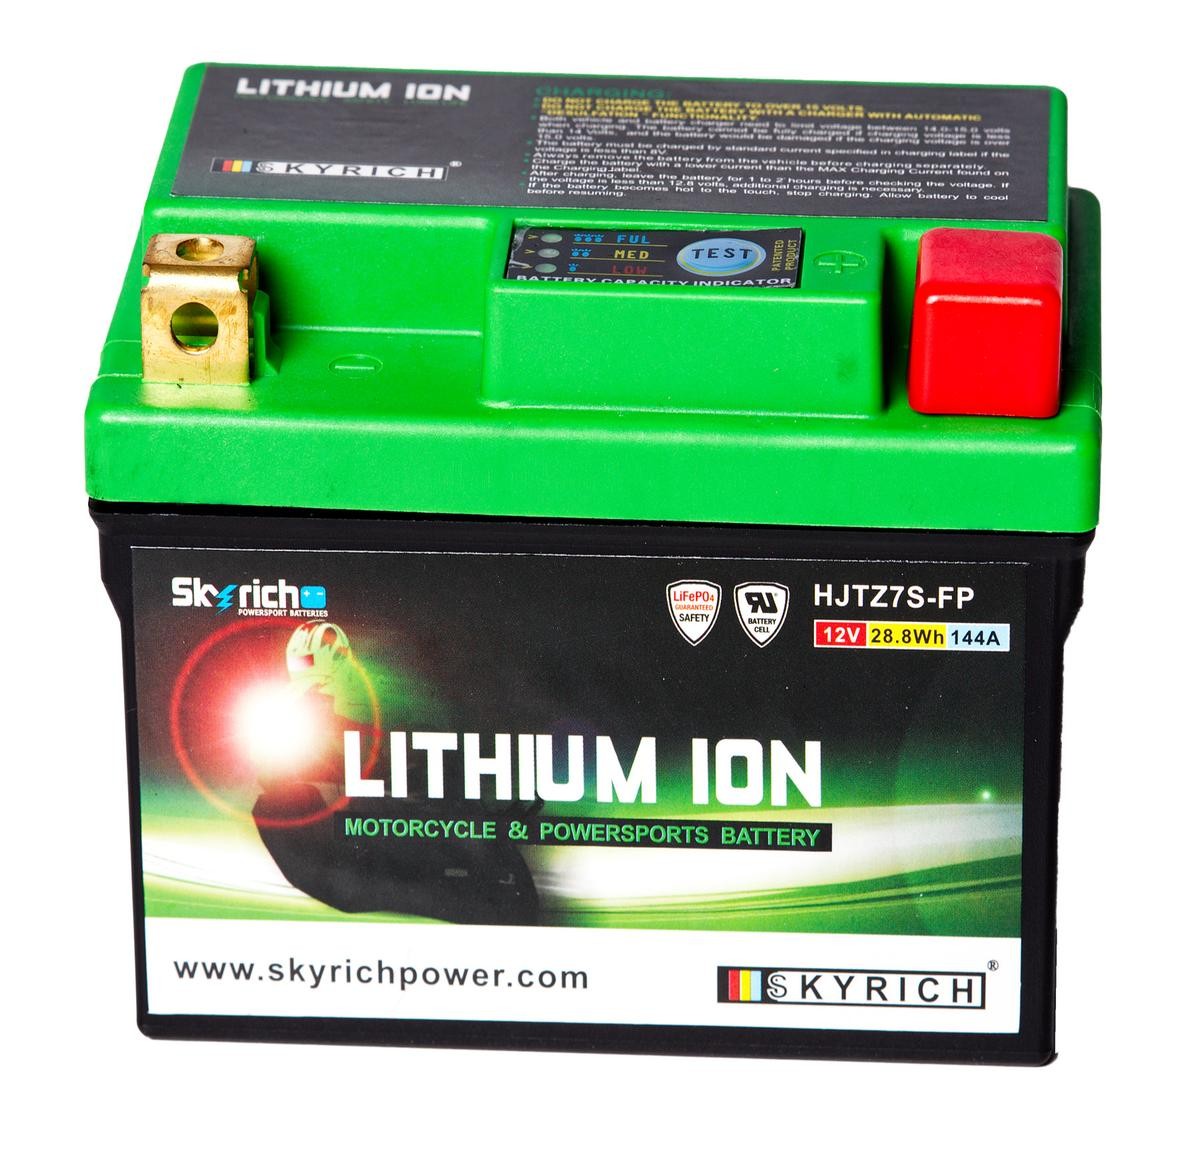 SKYRICH LITHIUM ION 12,8V 2,4Ah 144A N Li-Ion Battery Cold-test Current, EN: 144A, Voltage: 12,8V Starter battery HJTZ7S-FP buy